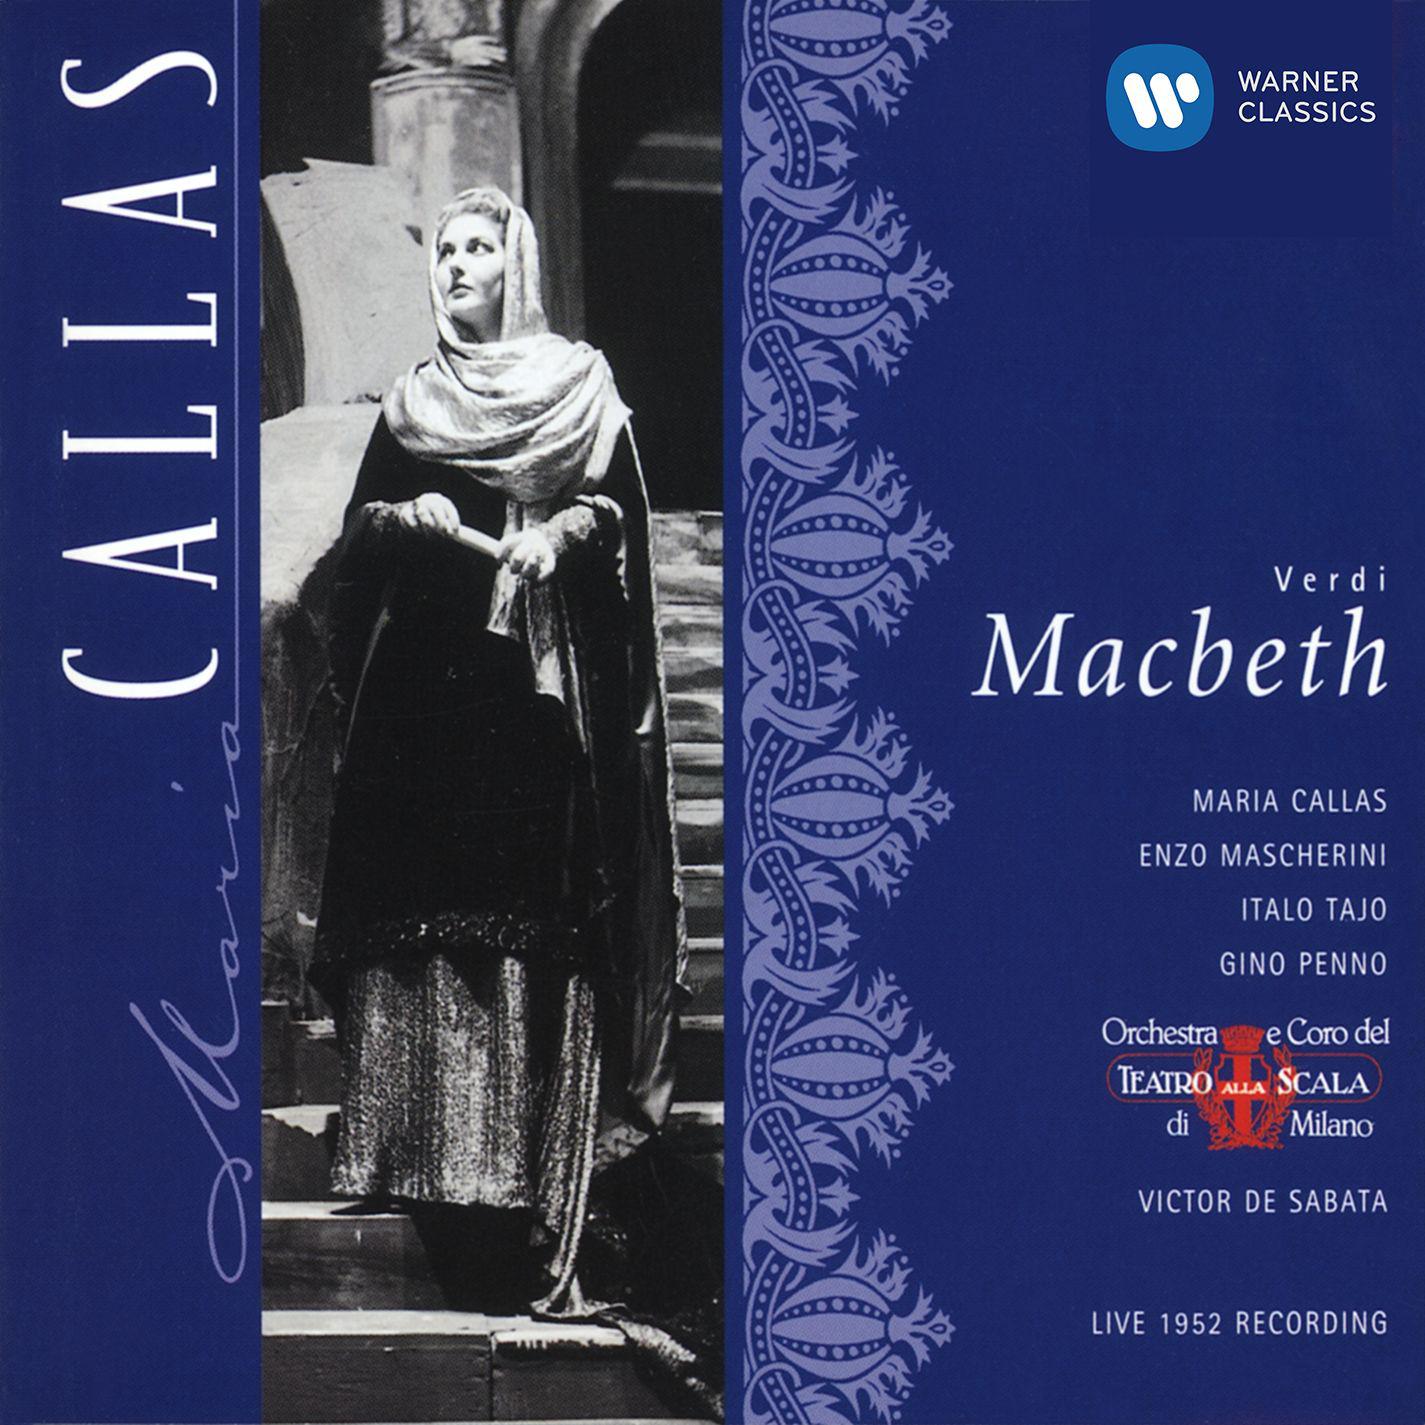 Coro del Teatro alla Scala di Milano - Macbeth (1997 Remastered Version), Act IV Scene 1:Patria oppressa!